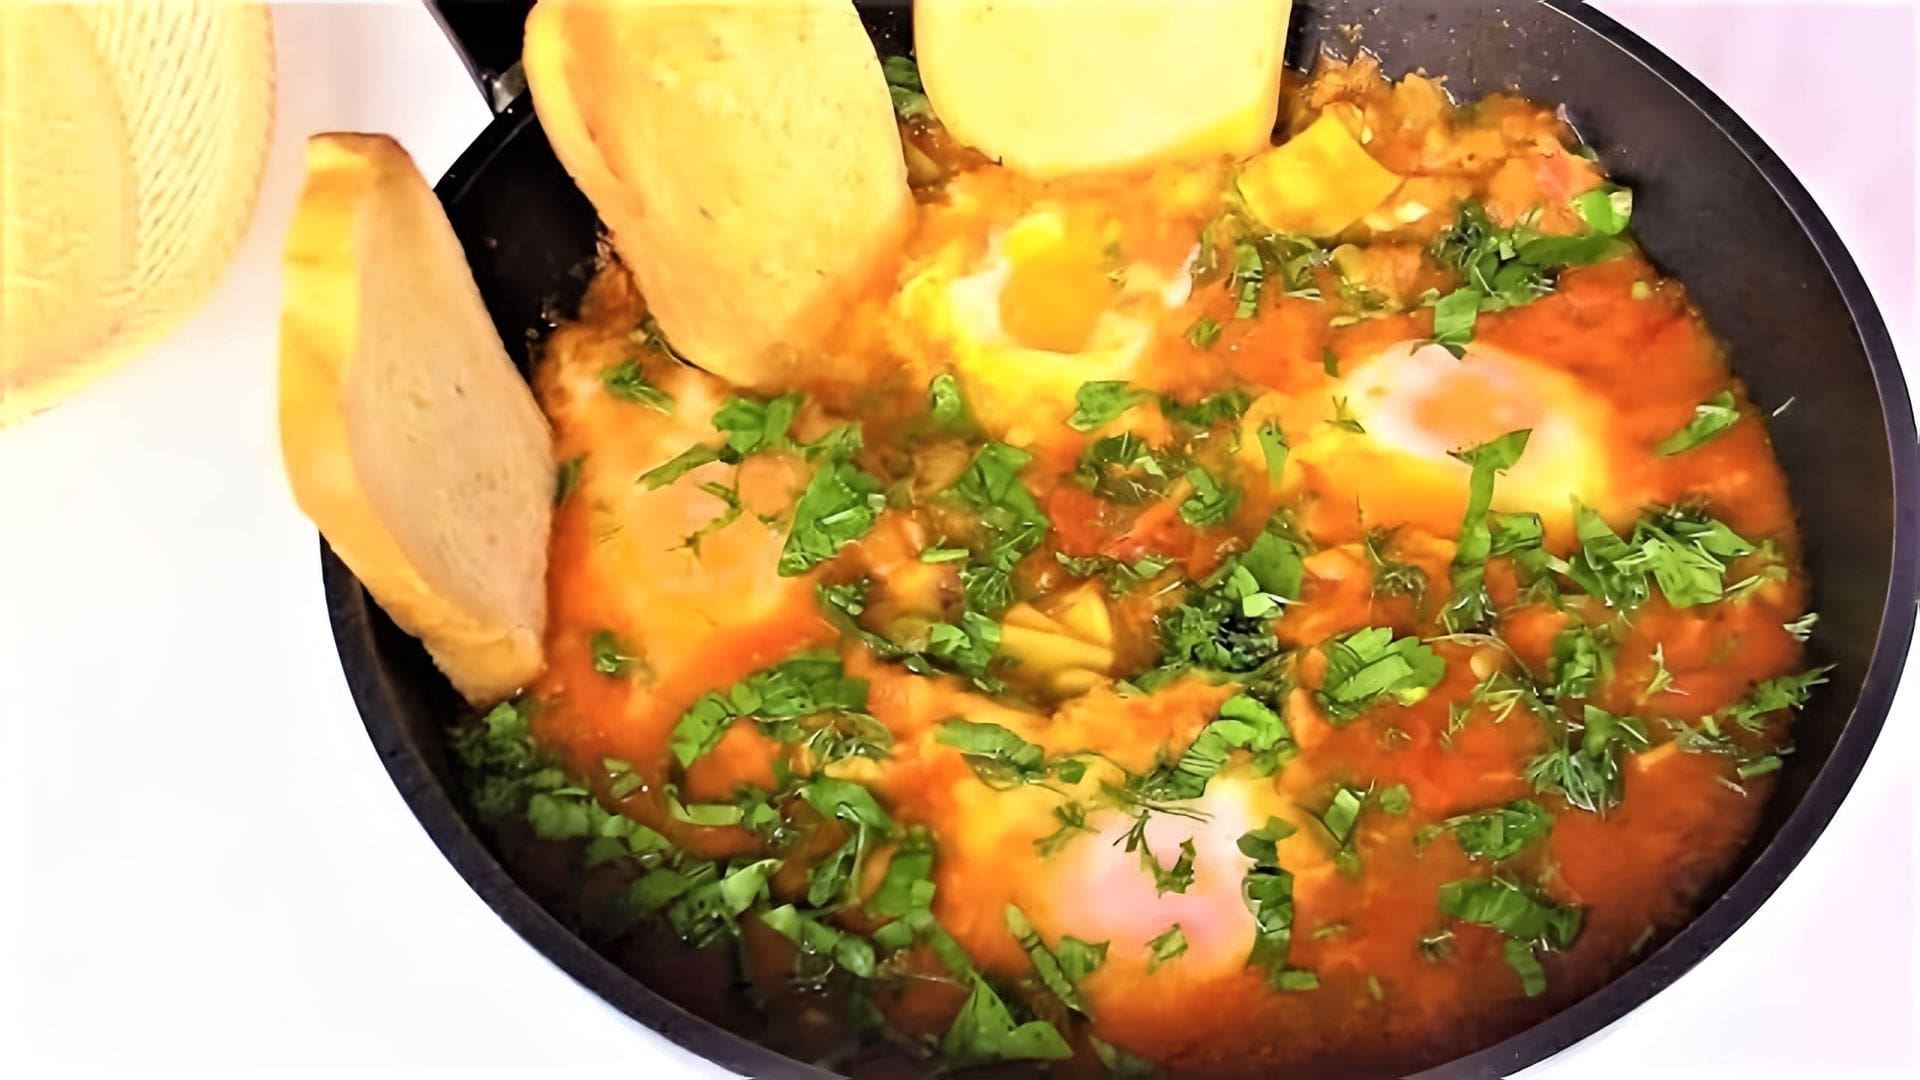 В этом видео демонстрируется процесс приготовления шакшуки - блюда из яиц в томатном соусе с грибами